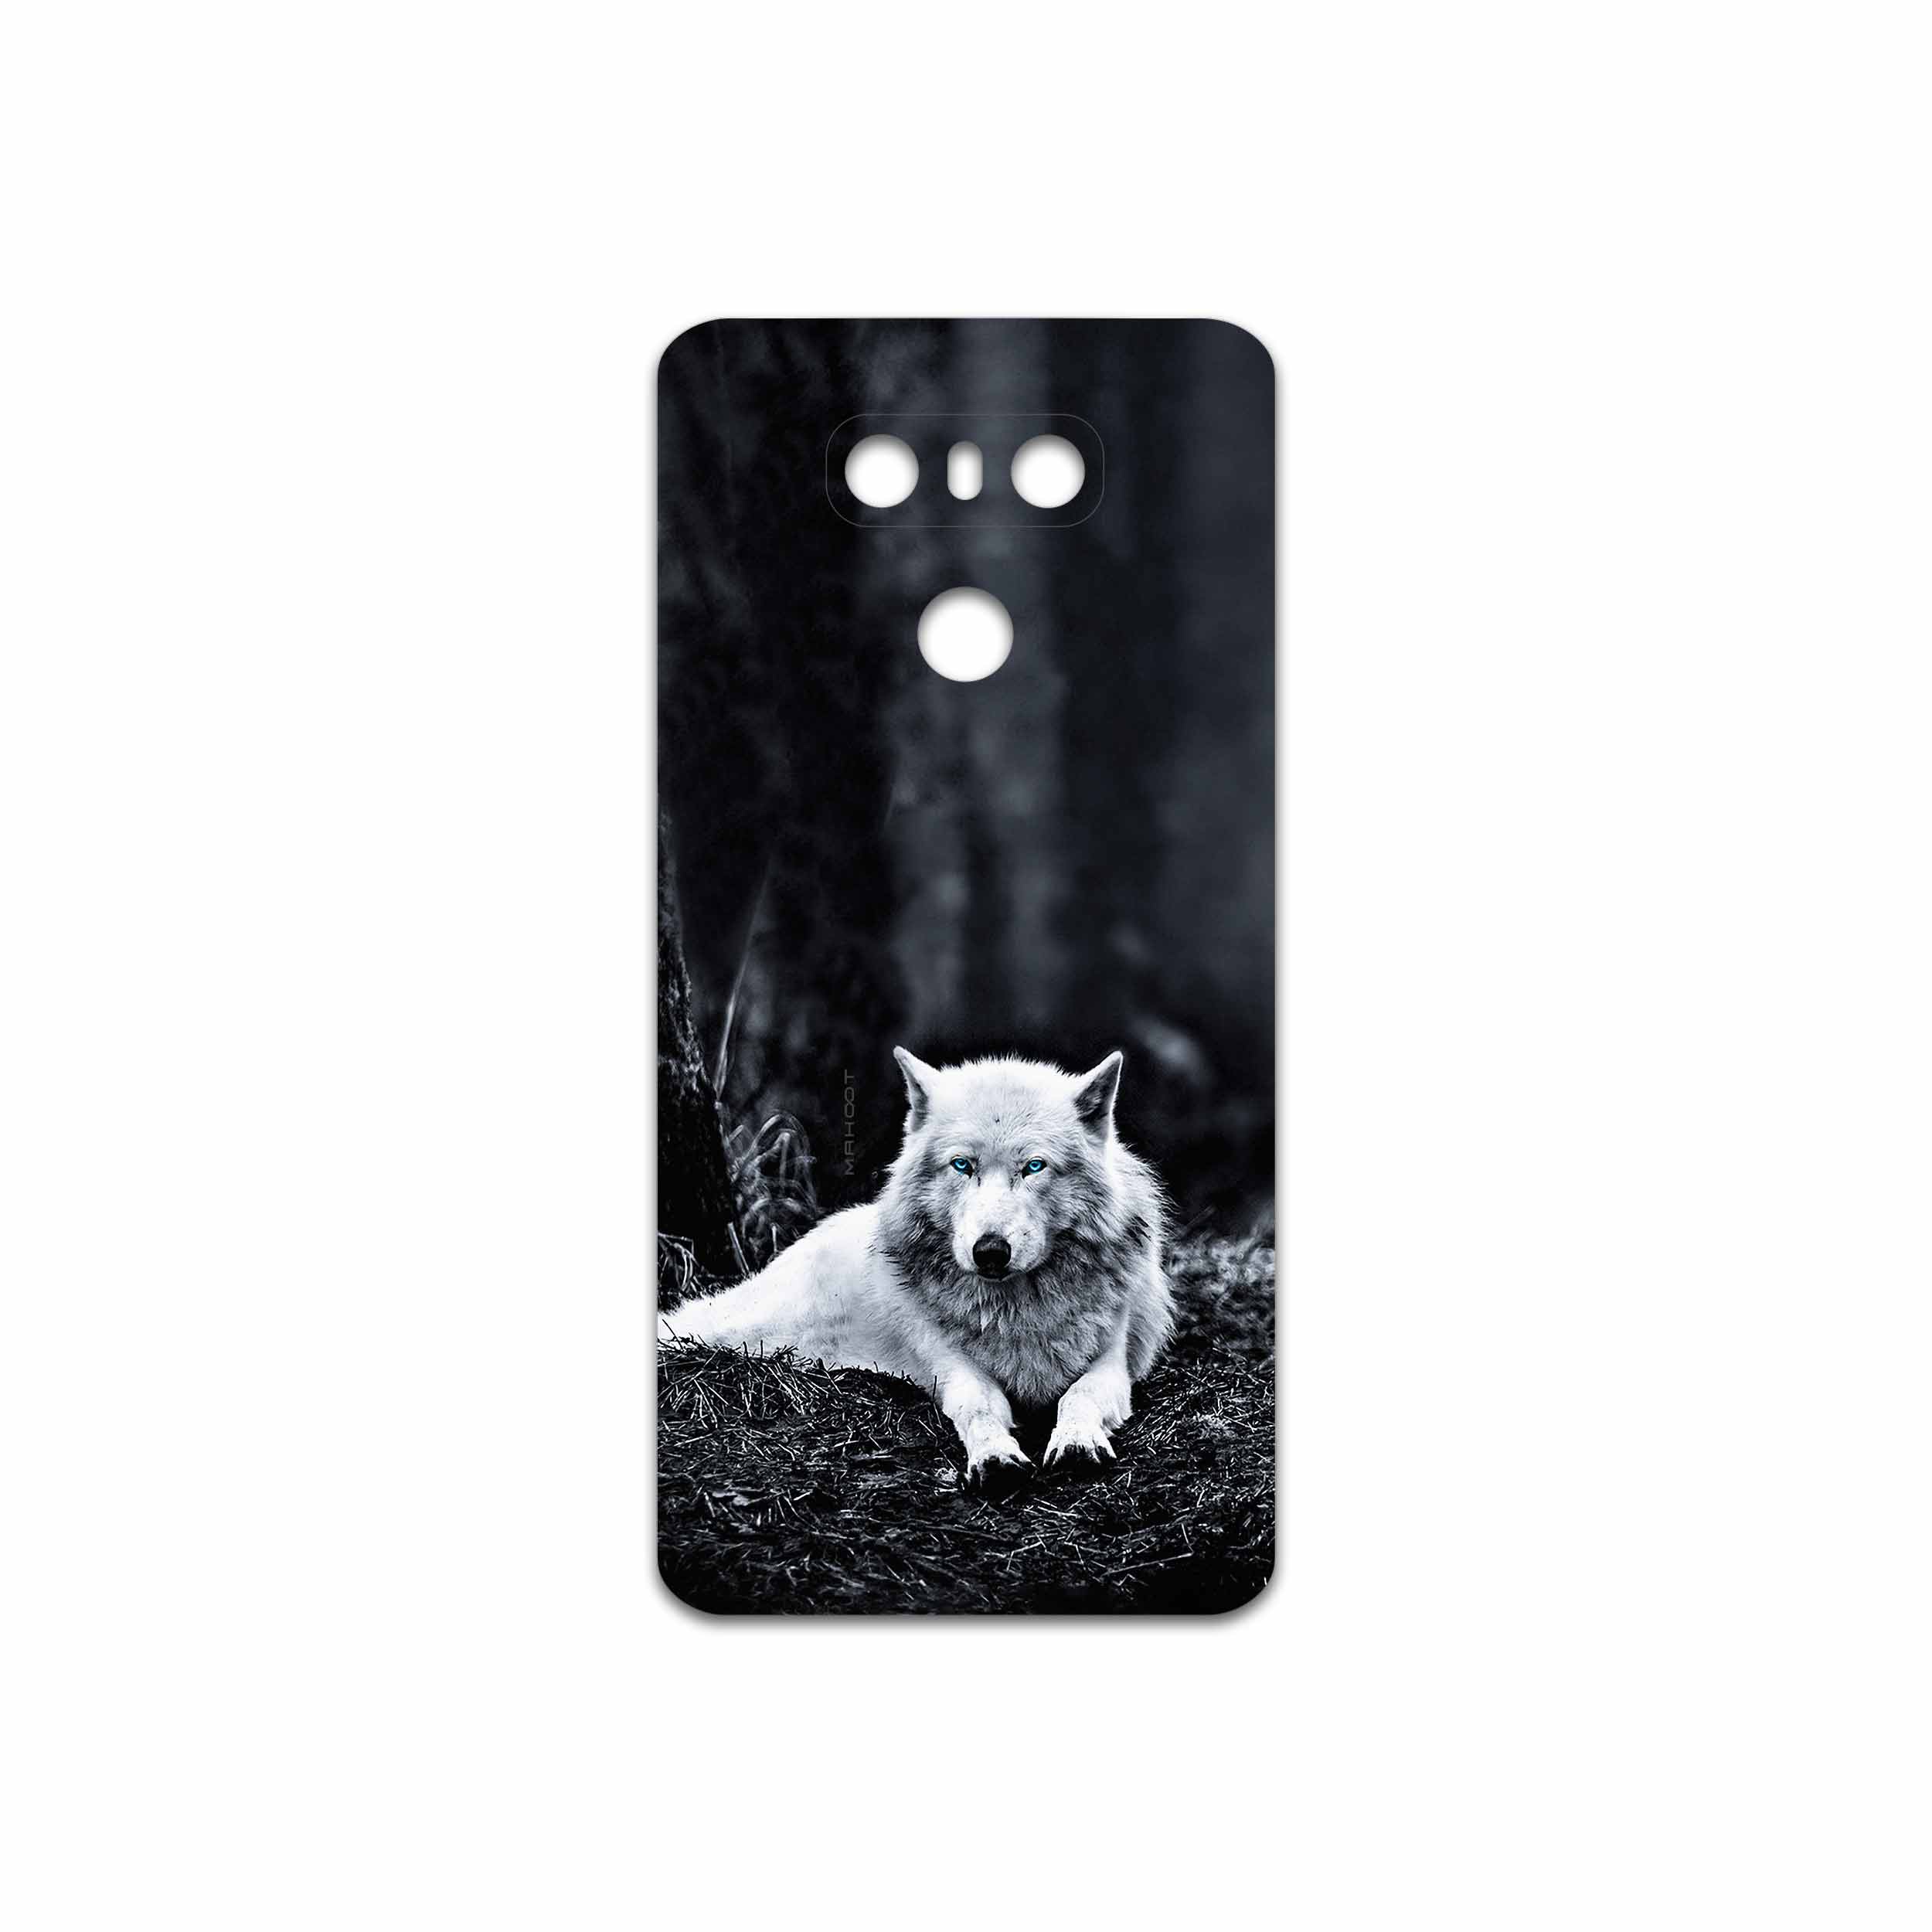 برچسب پوششی ماهوت مدل Dire Wolf مناسب برای گوشی موبایل ال جی G6